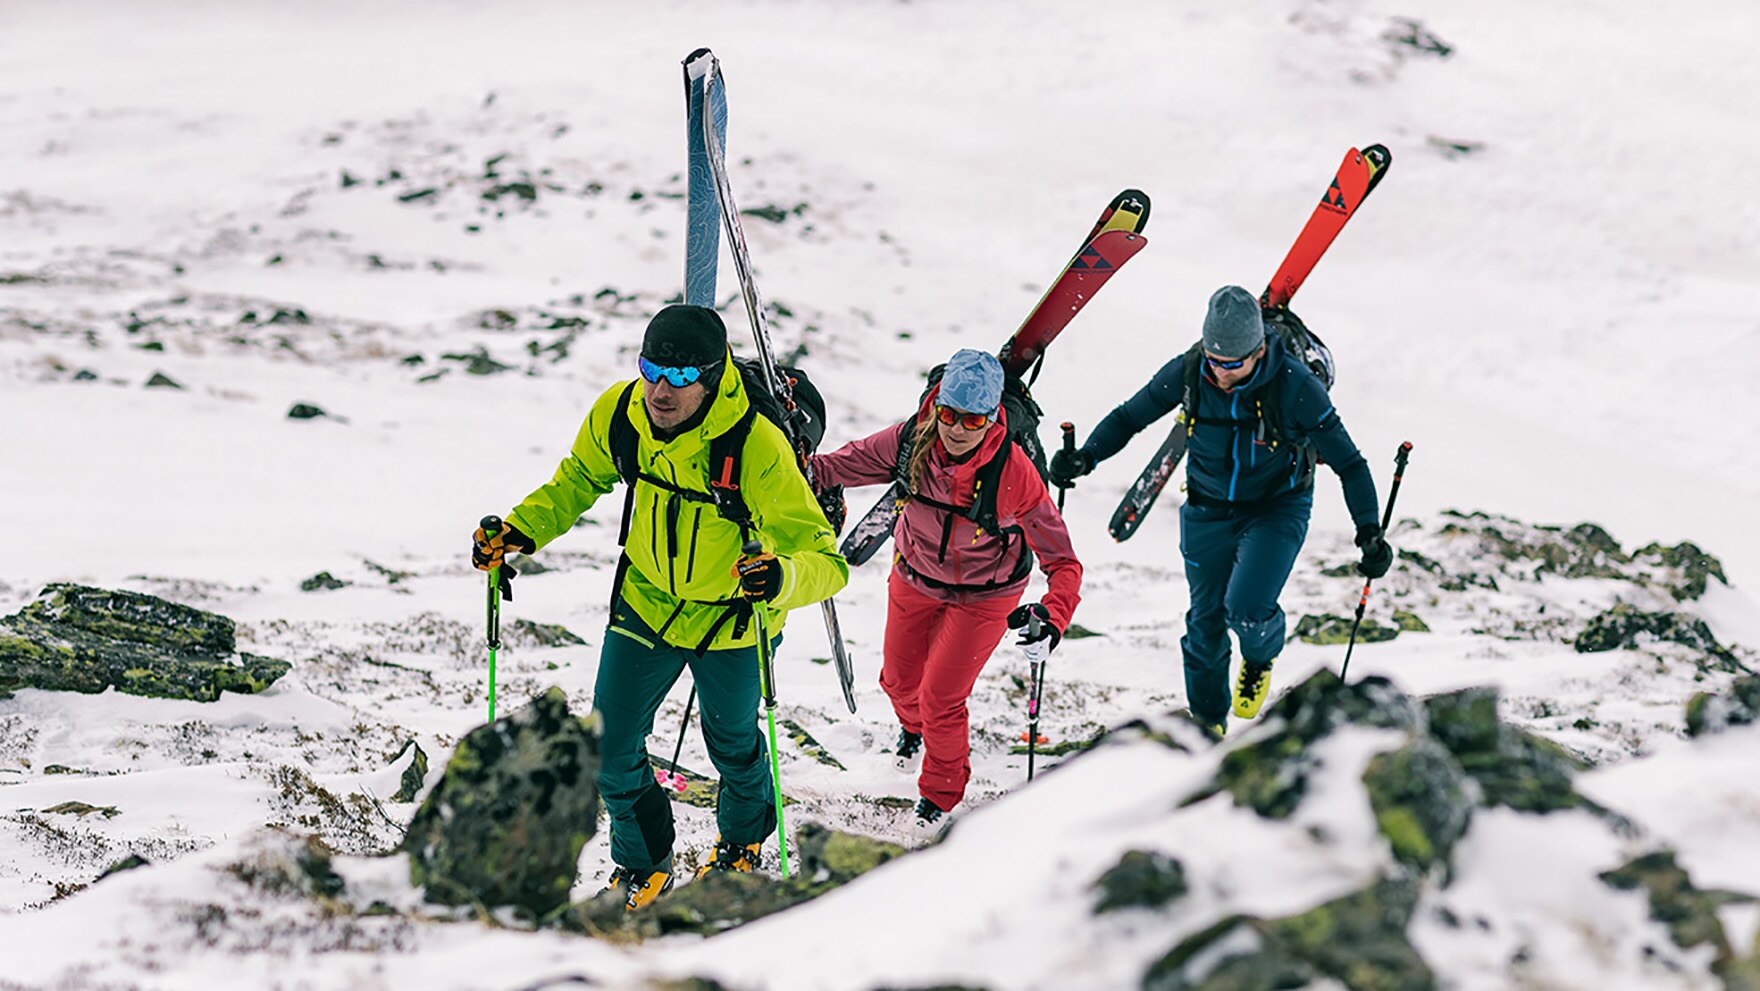 Die Skitouren-Kollektion von Schöffel bietet eine starke Produktkombination, die leidenschaftliche Bergfreunde optimal unterstützt.